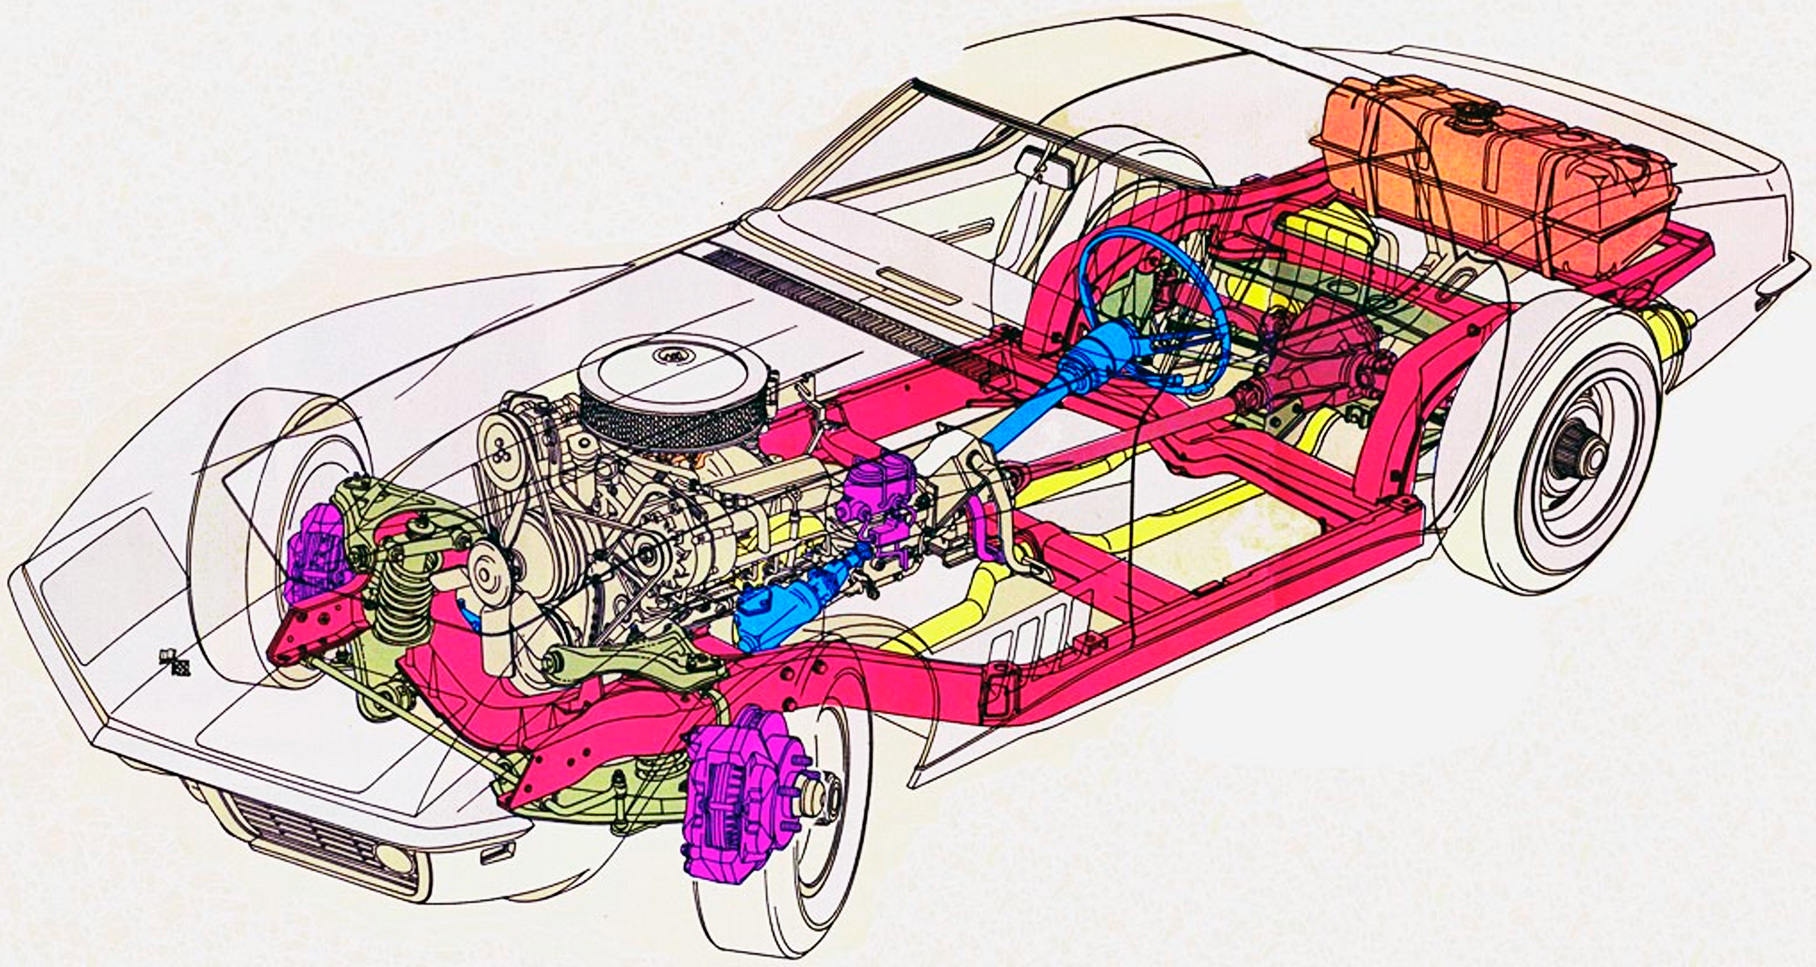 Дисковые тормоза появились на Corvette С3, но комплекты для установки дисков на «Корветы» без оных продаются в США и сегодня